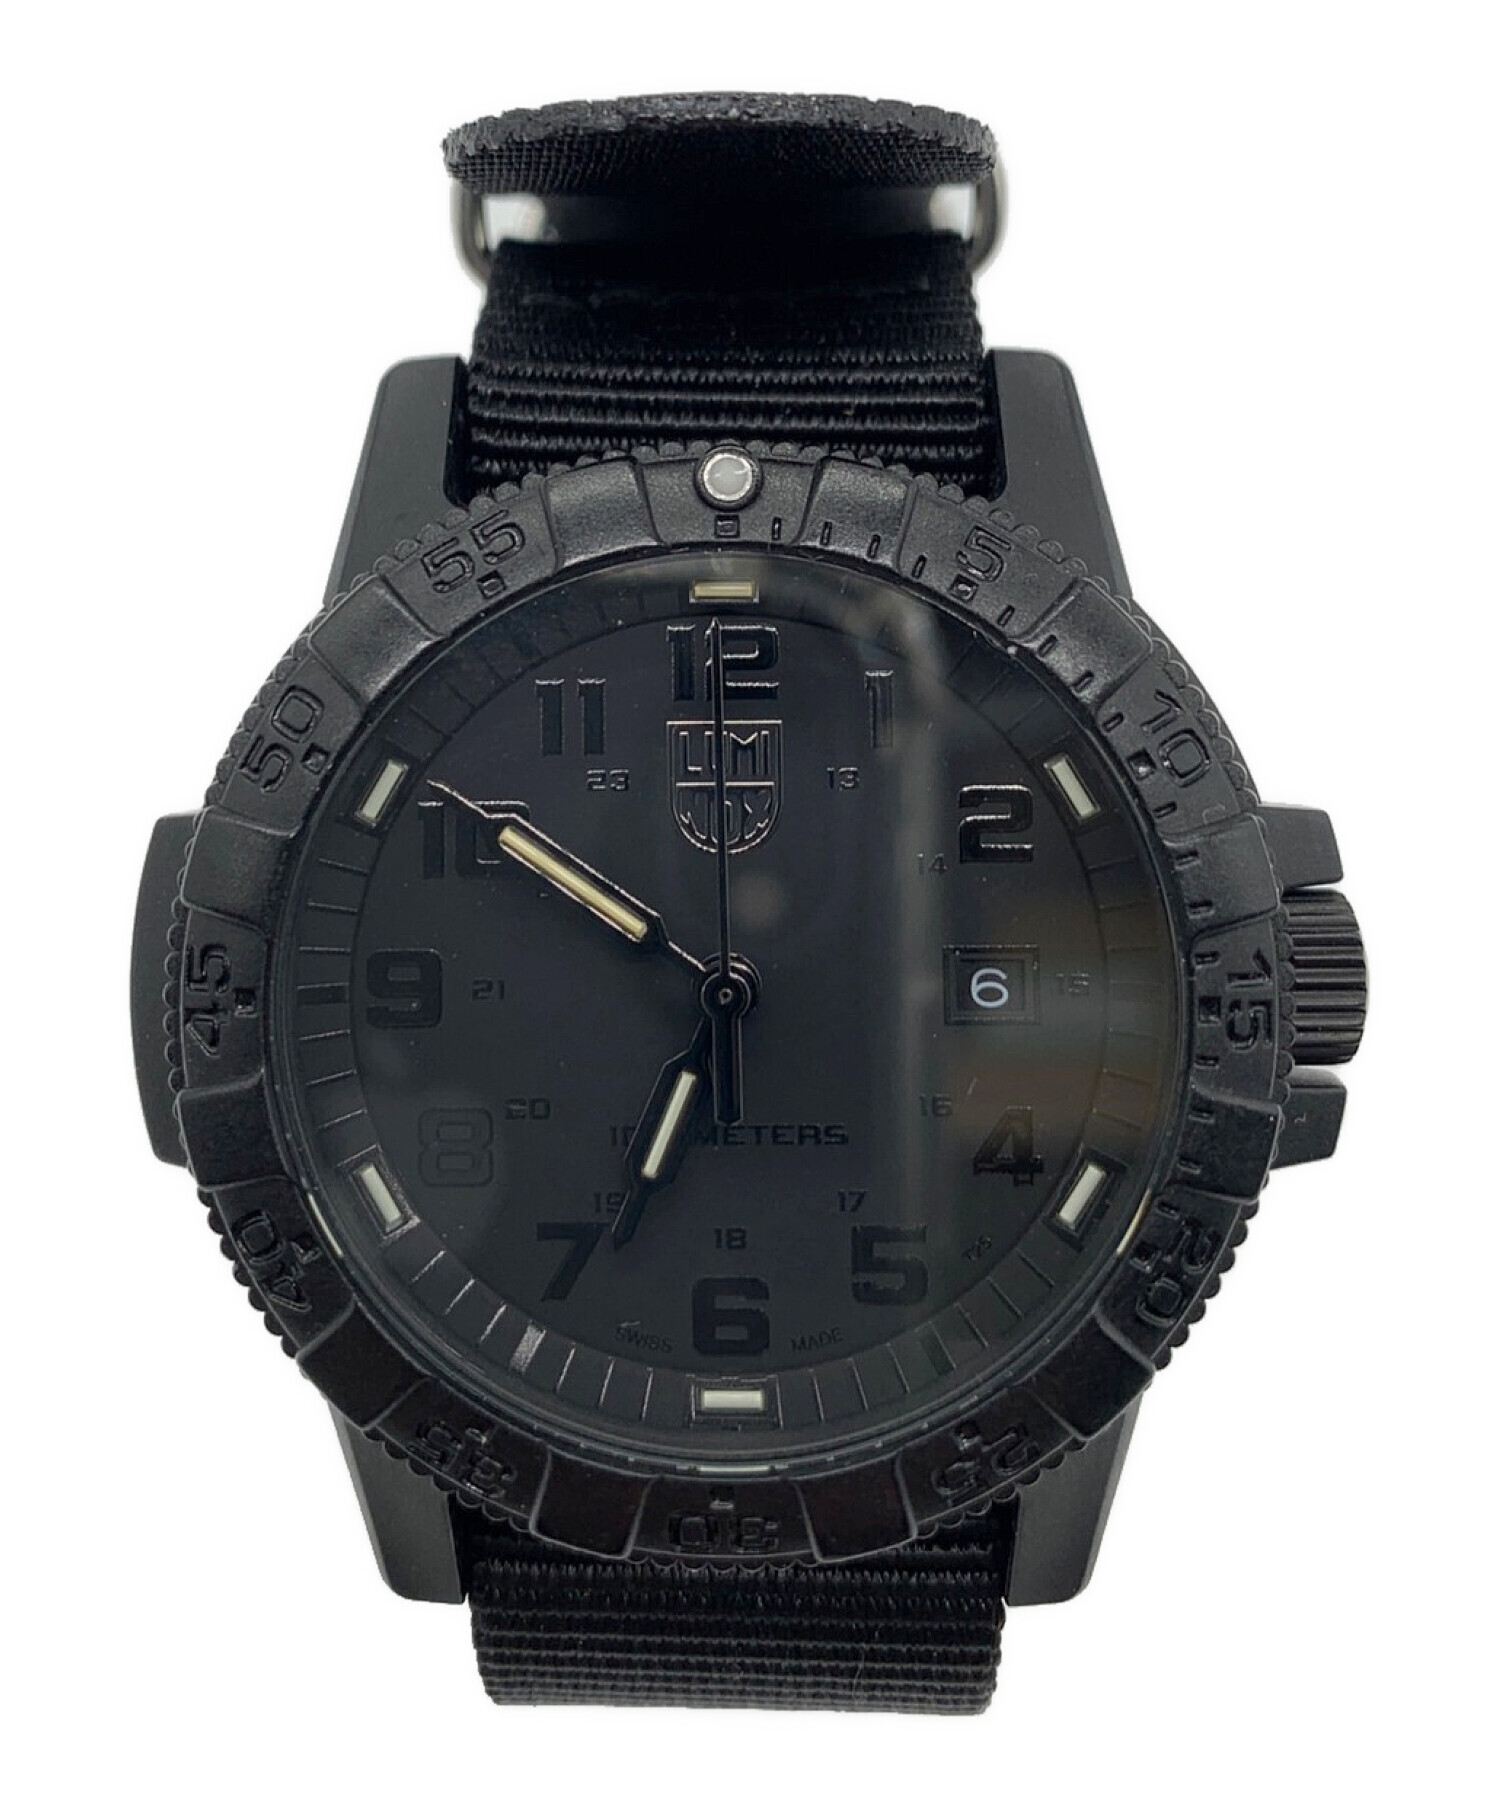 ルミノックスブラック腕時計(デジタル) - 腕時計(デジタル)